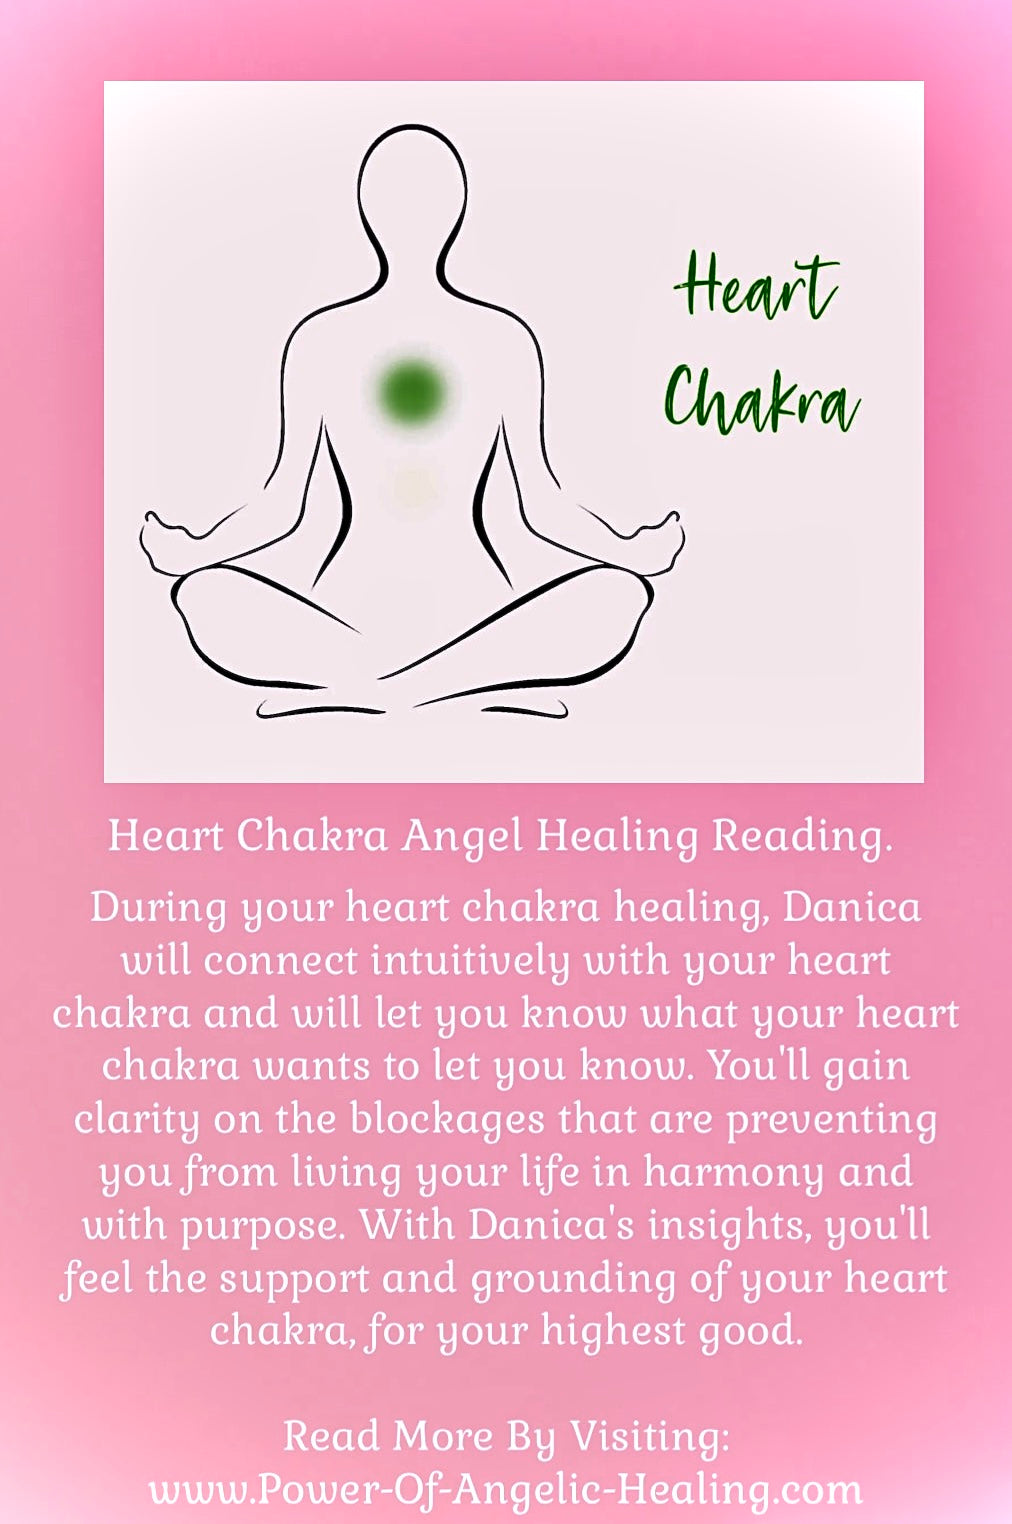 Heart Chakra Angel Healing Reading.